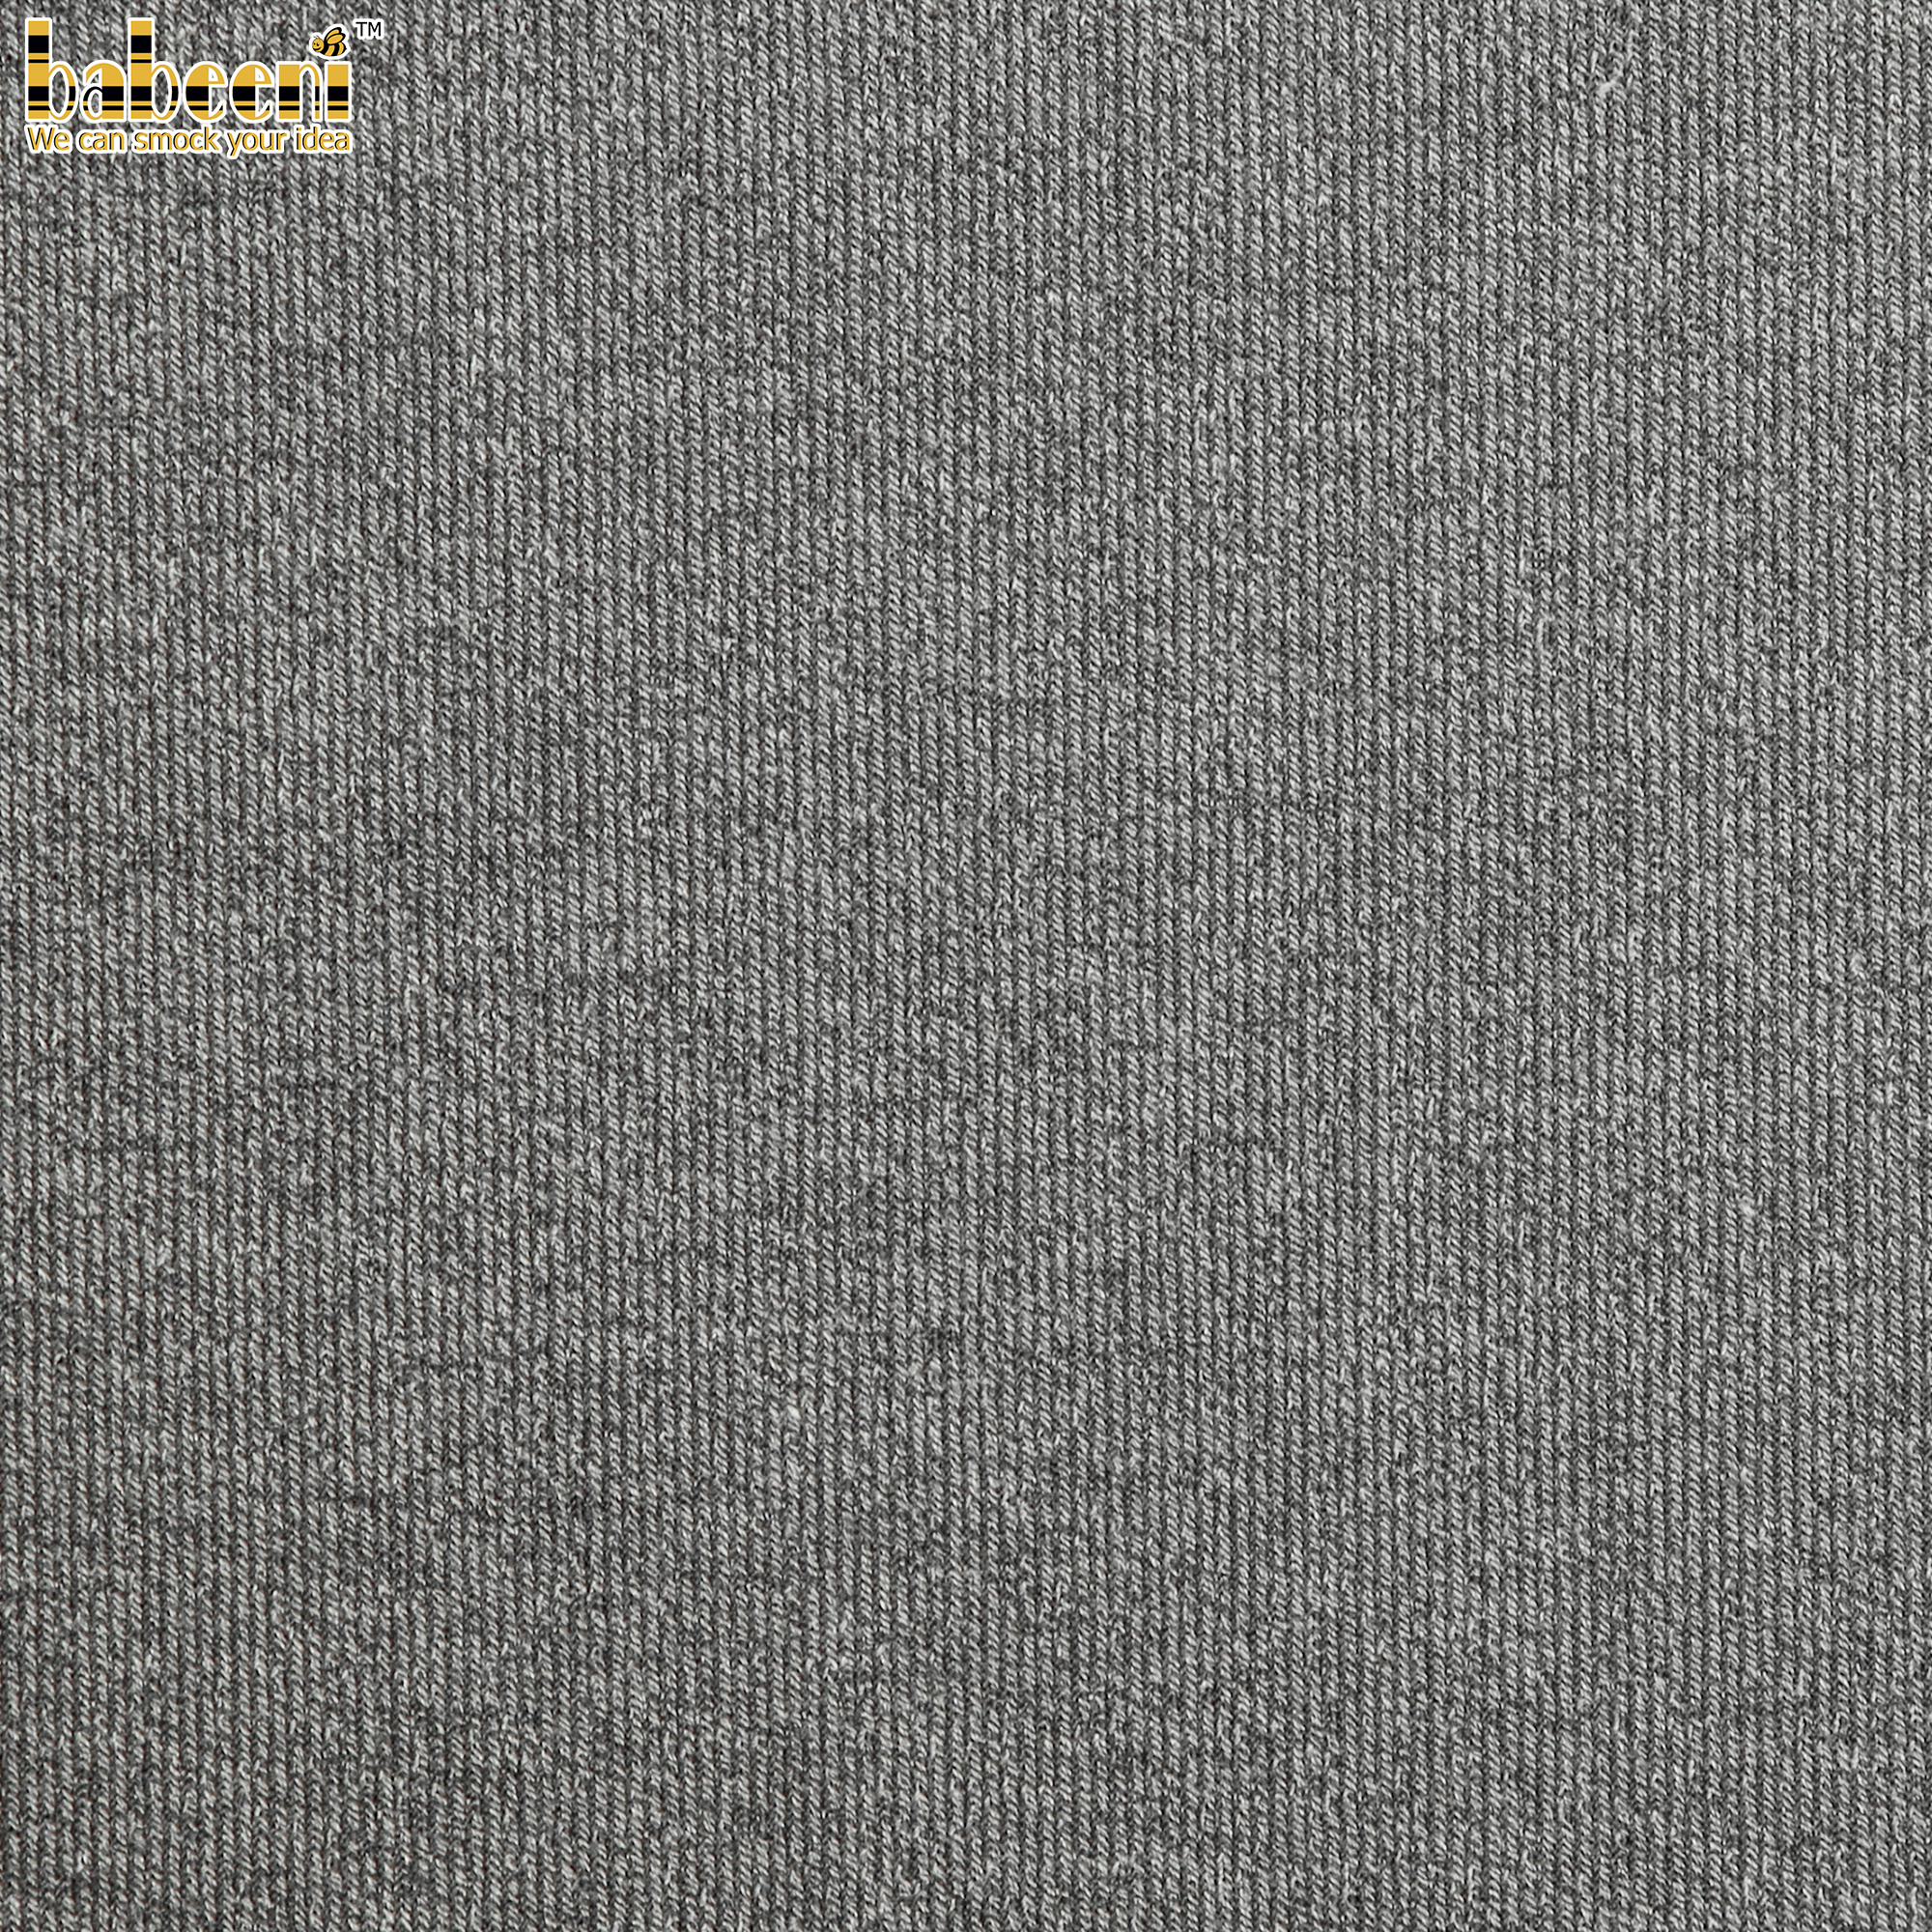 CD20- Dark Grey thin cardigan fabric